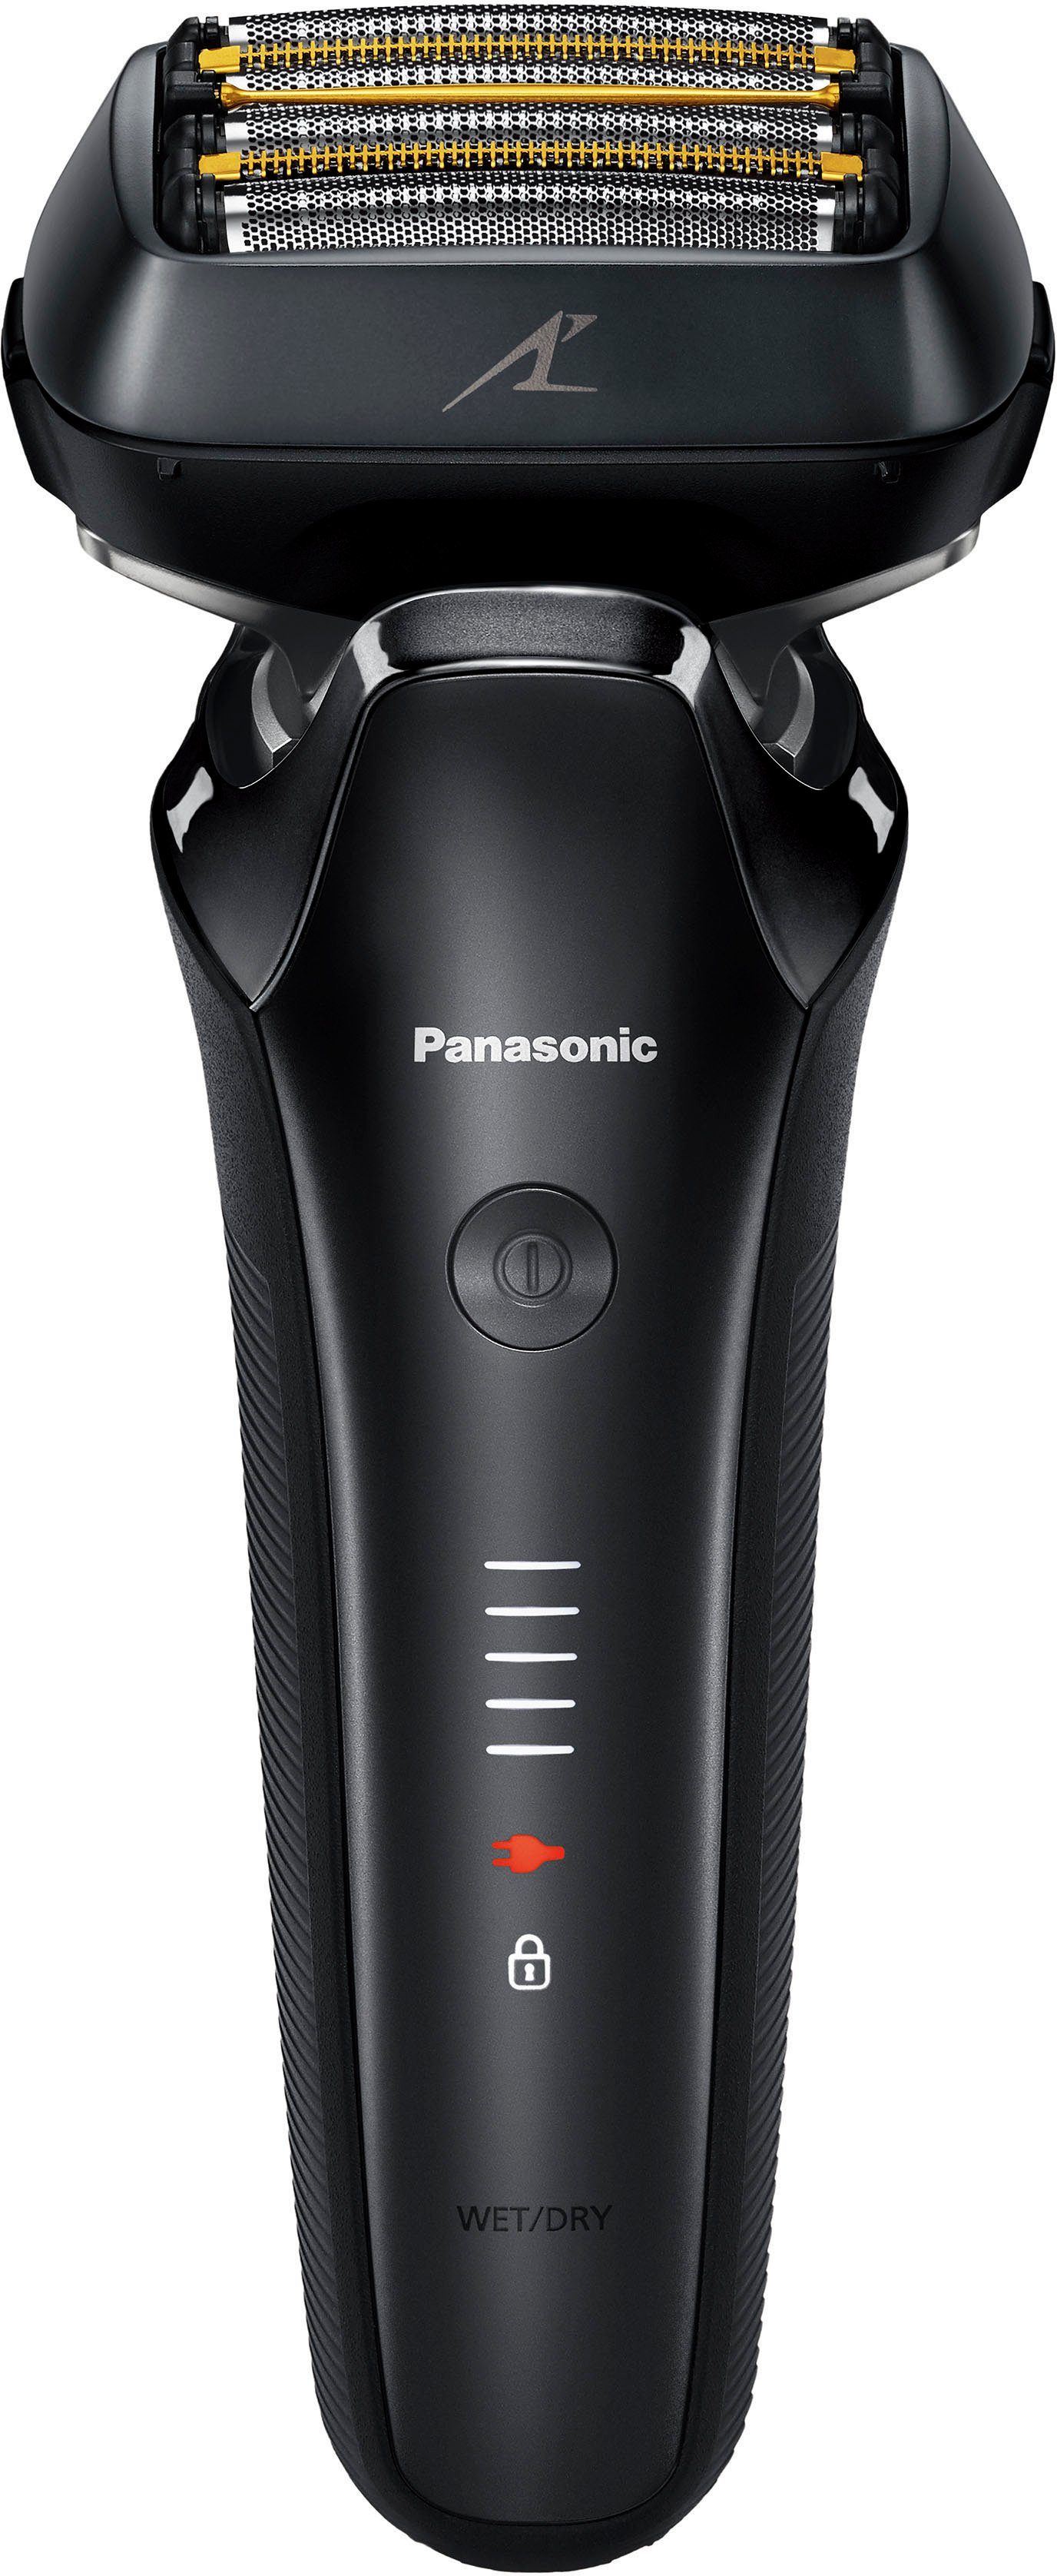 Rasierer 900+ Elektrorasierer Langhaartrimmer Panasonic Premium Series ES-LS6A-K803,